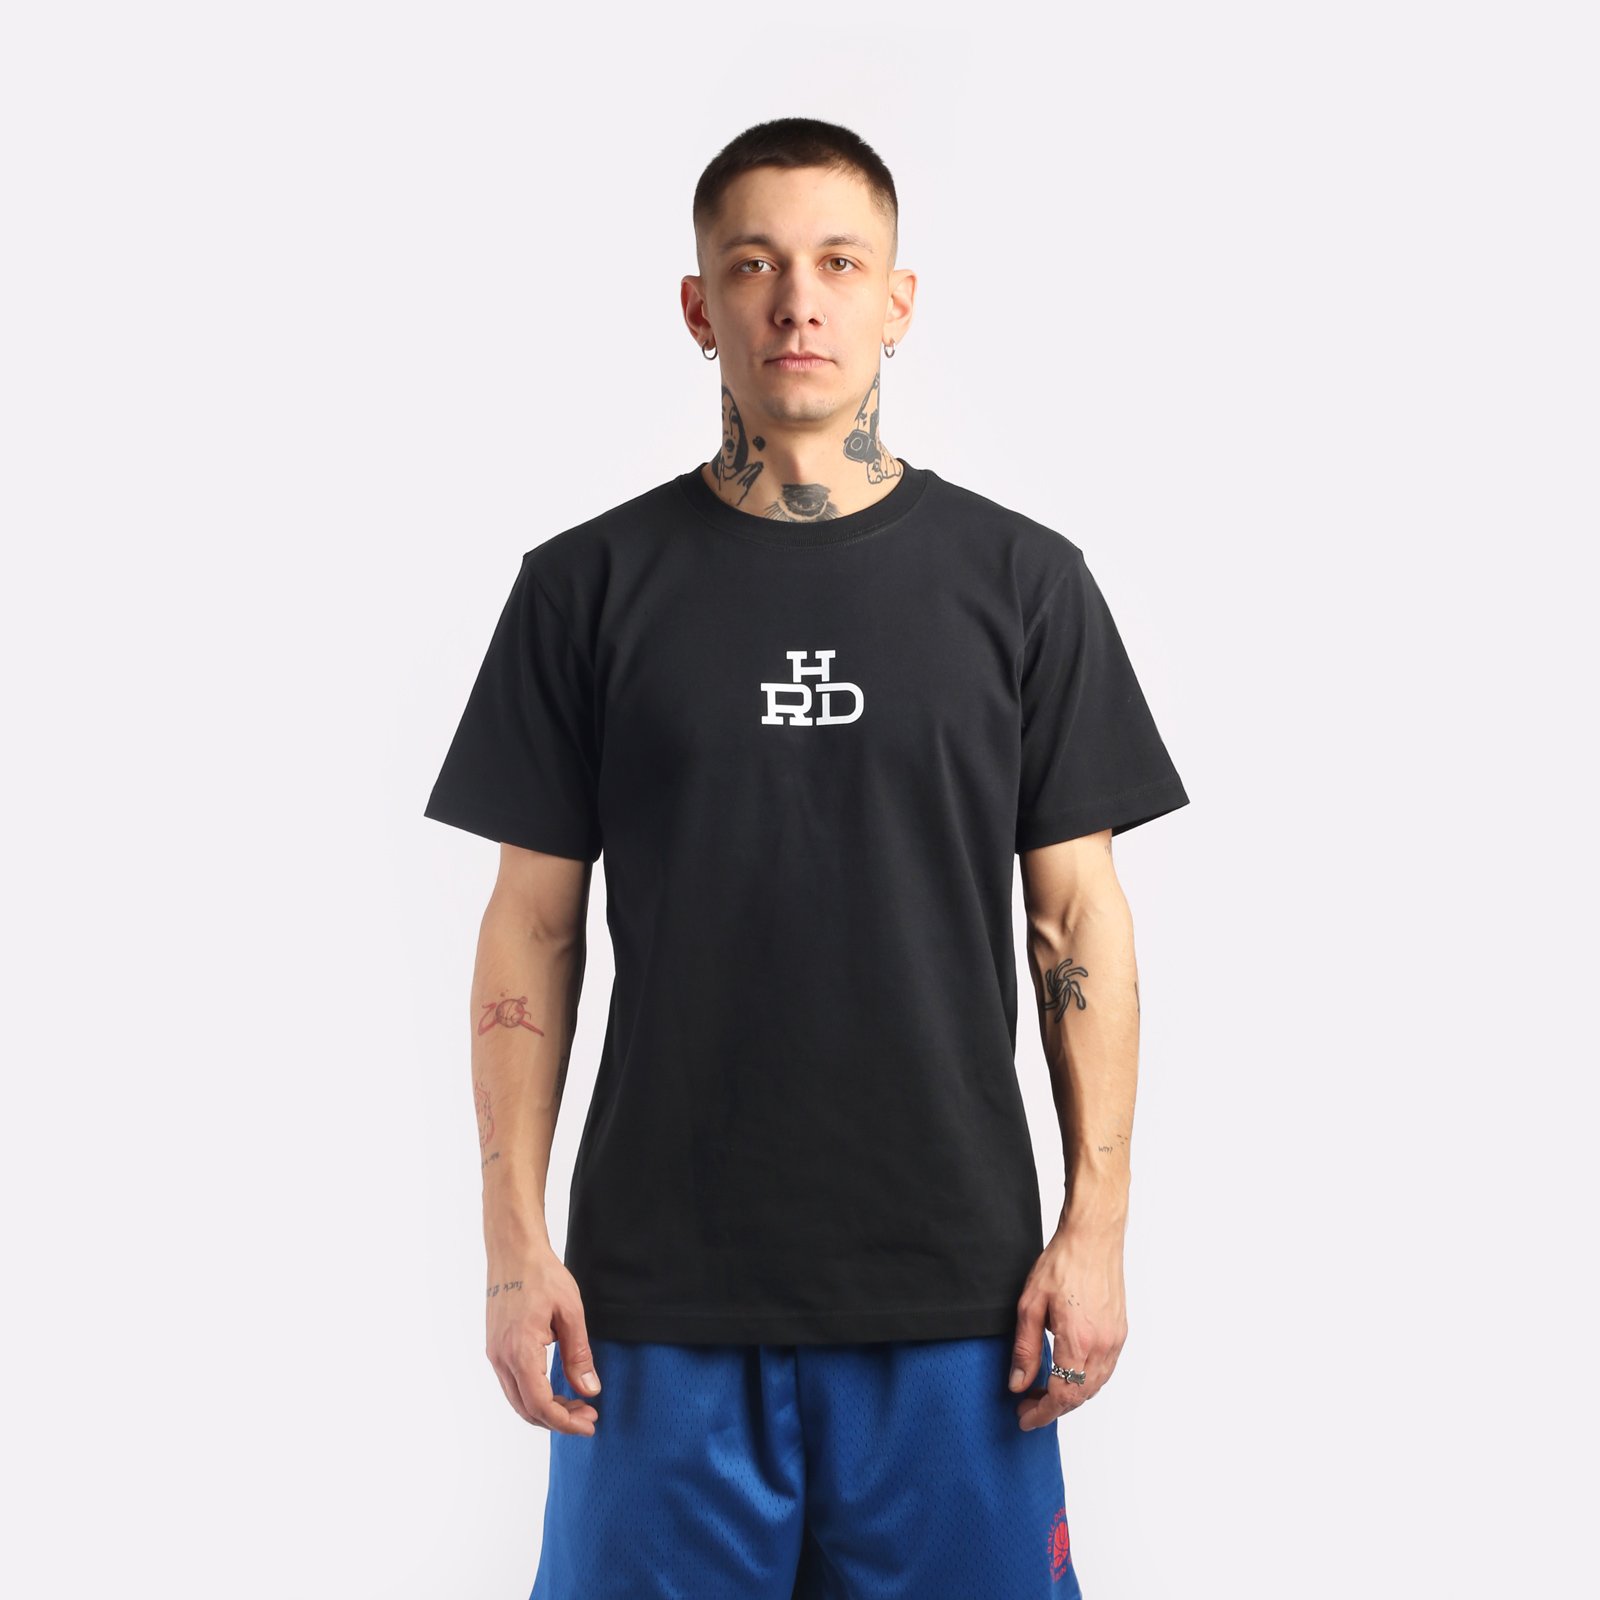 мужская футболка Hard Logo  (Tee hrd-blck)  - цена, описание, фото 1